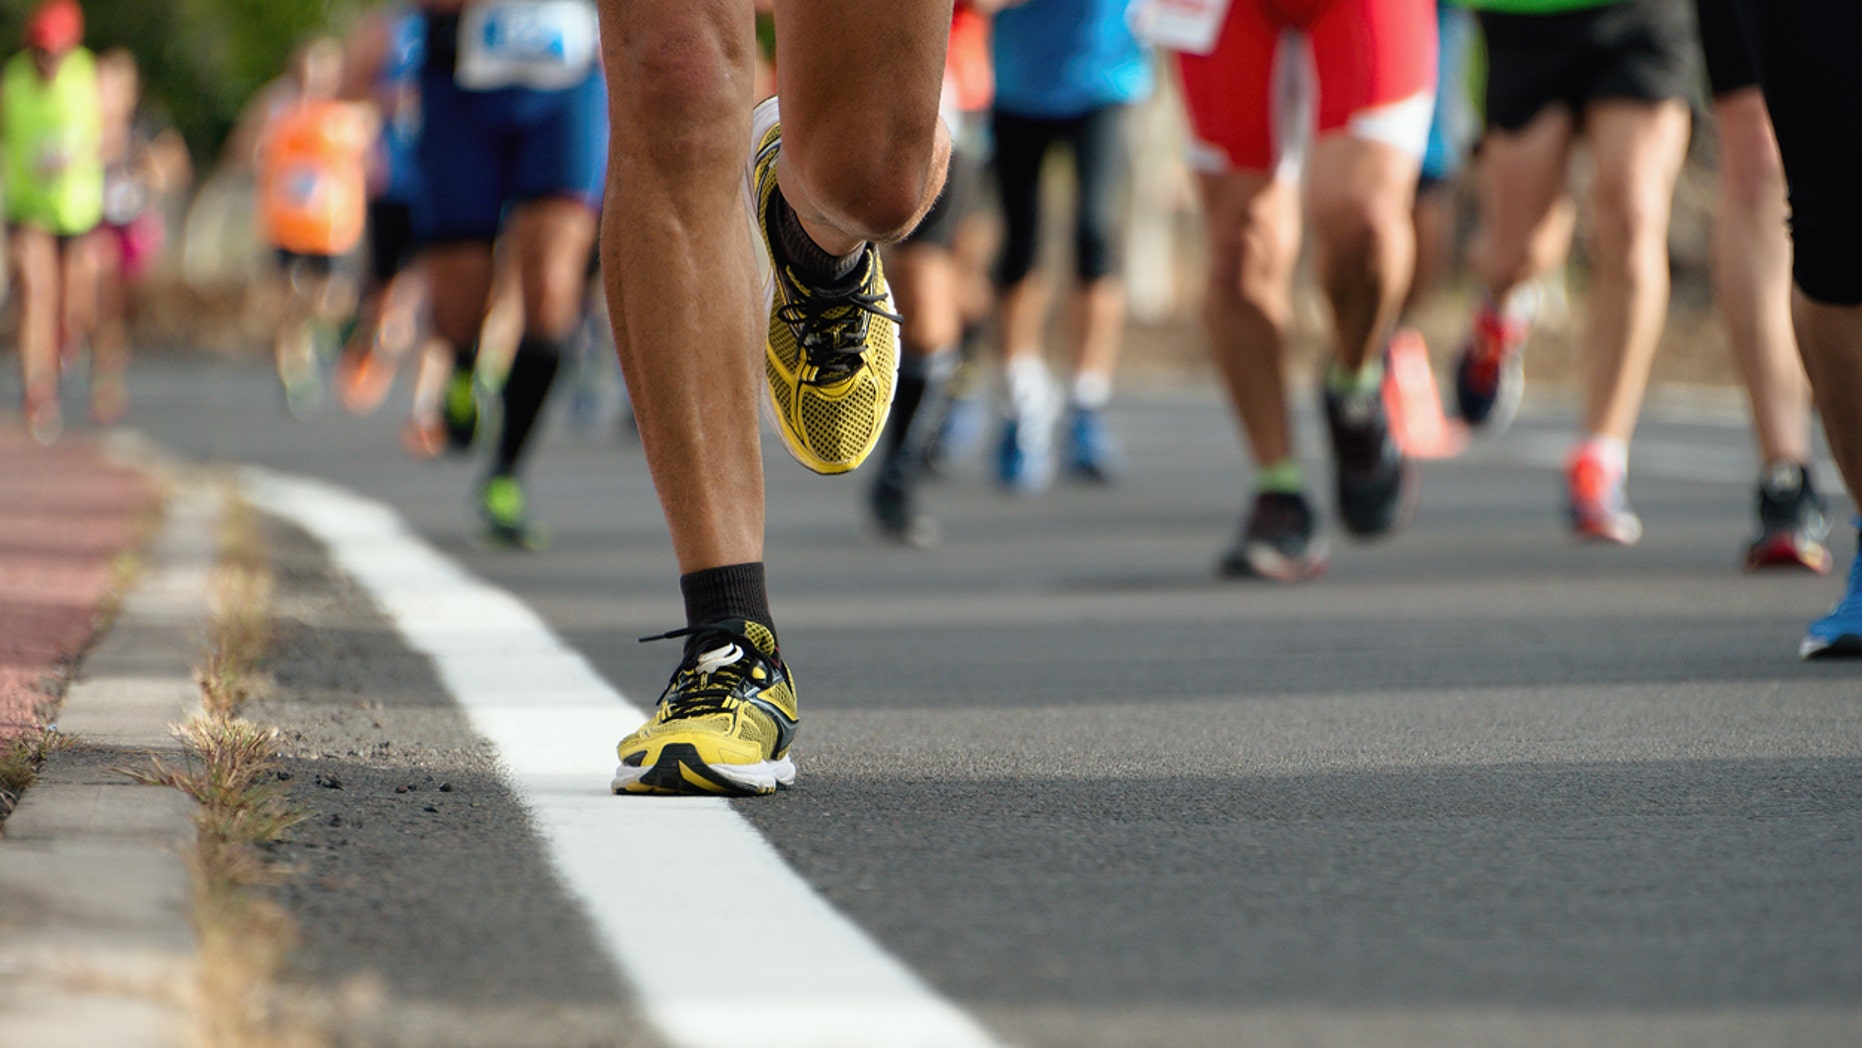 Heroic high schooler helps exhausted marathon runner cross finish line ...